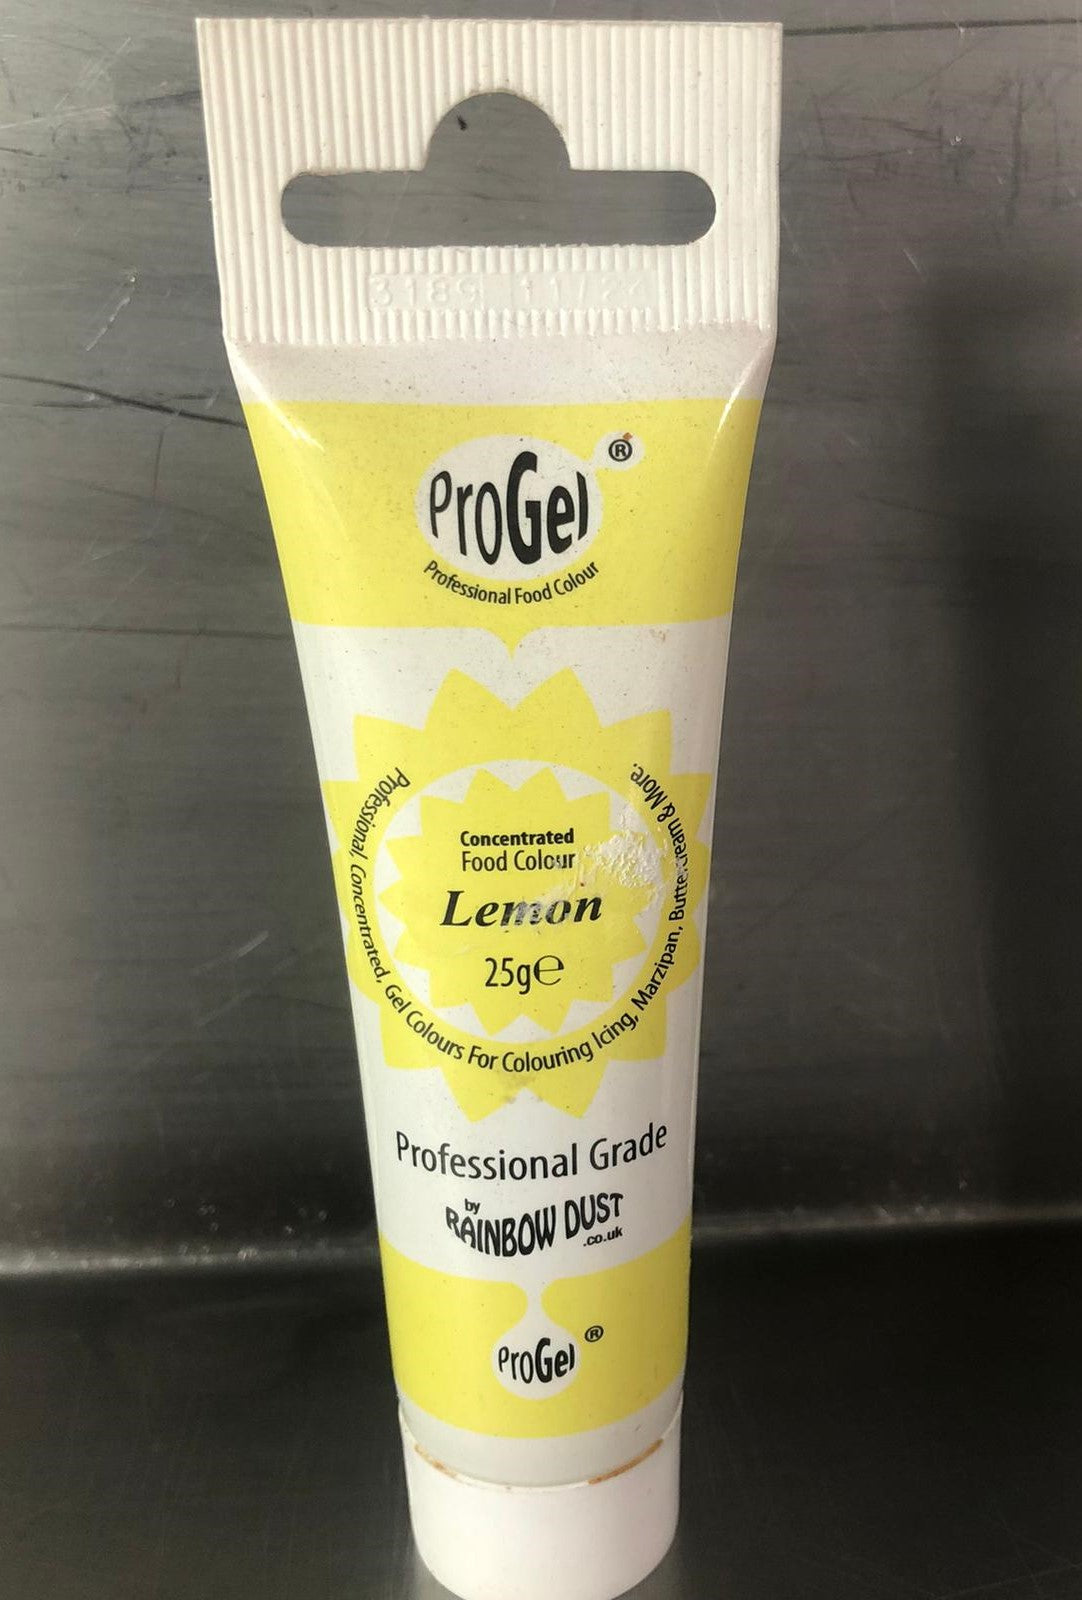 ProGel Lemon Food Colour